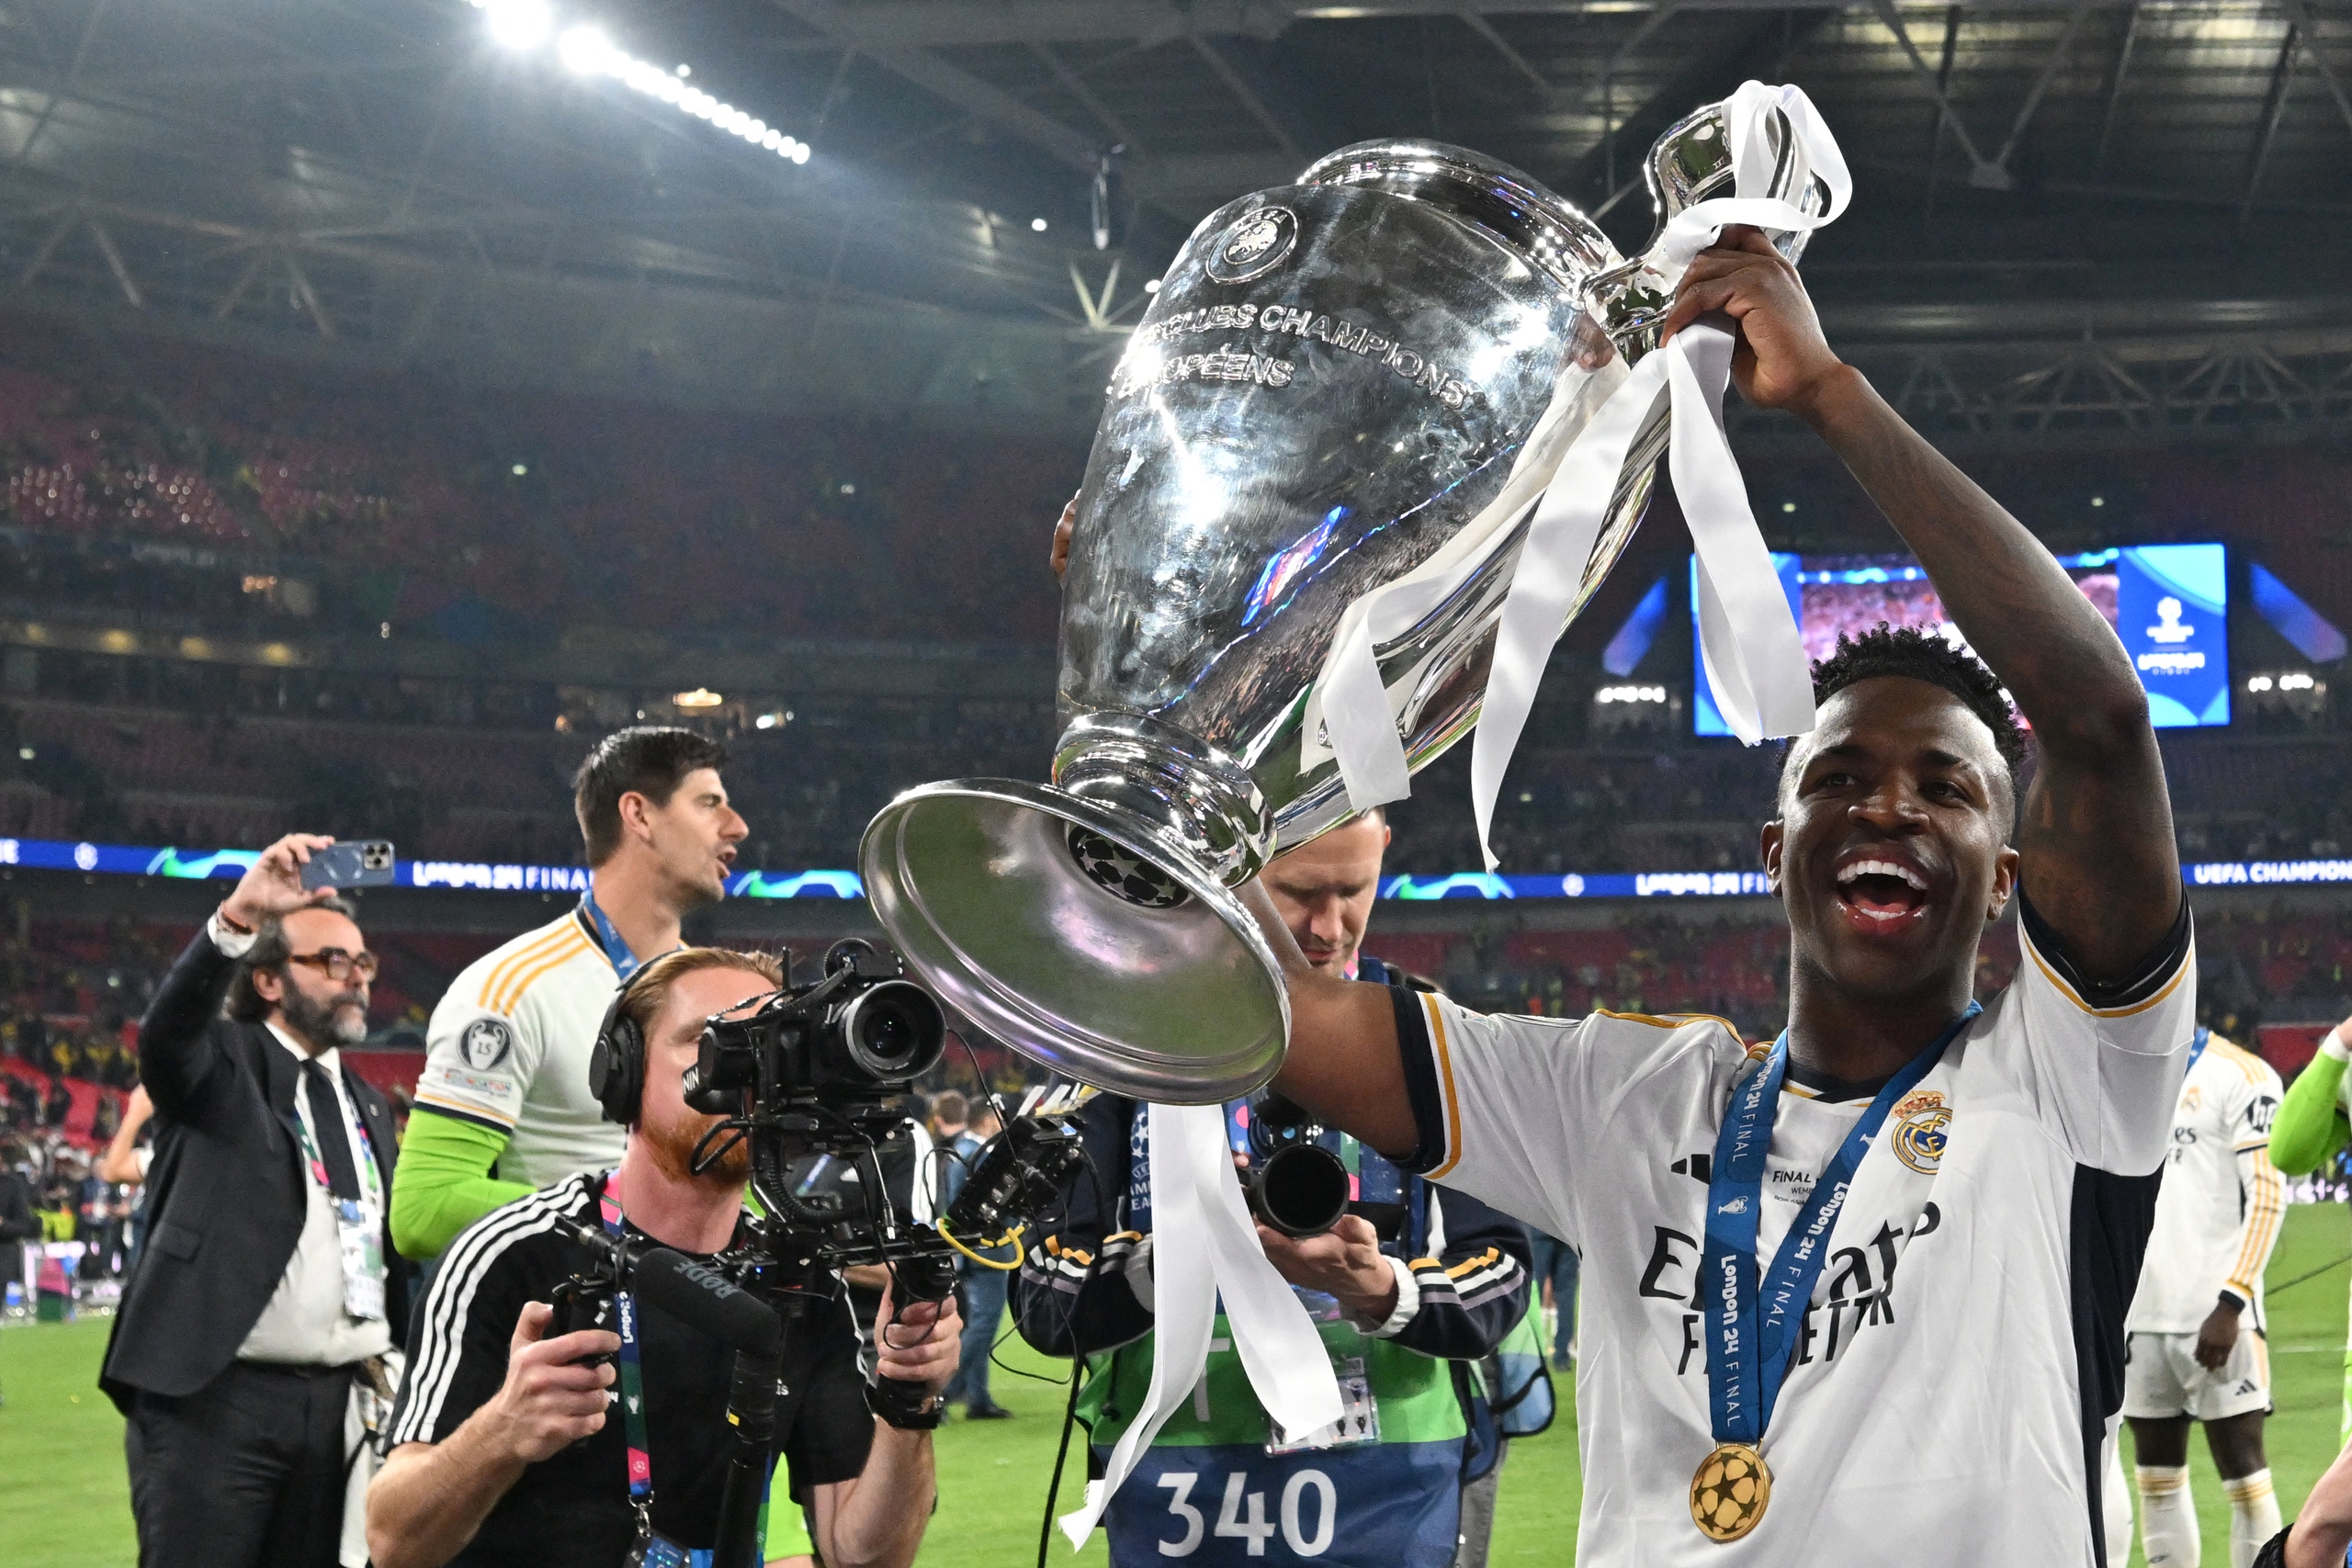 Lần thứ 15 đăng quang, Real Madrid tiếp tục làm bá chủ giải hàng đầu châu Âu- Ảnh 12.